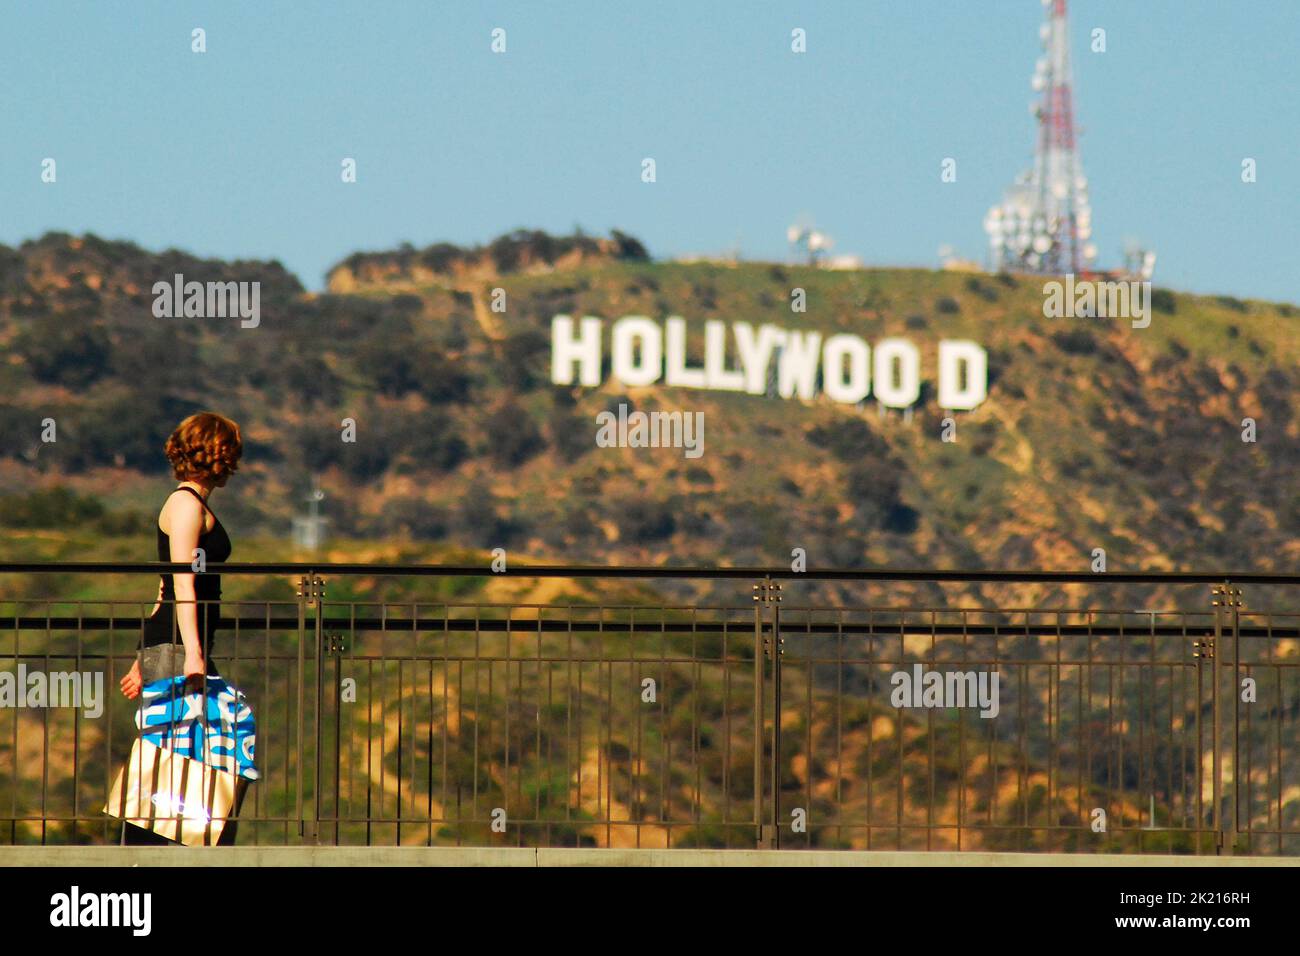 Eine junge Frau trägt ihre Einkaufstasche auf den oberen Etagen des Hollywood- und Highland-Einkaufszentrums und passiert vor dem berühmten Hollywood-Schild Stockfoto